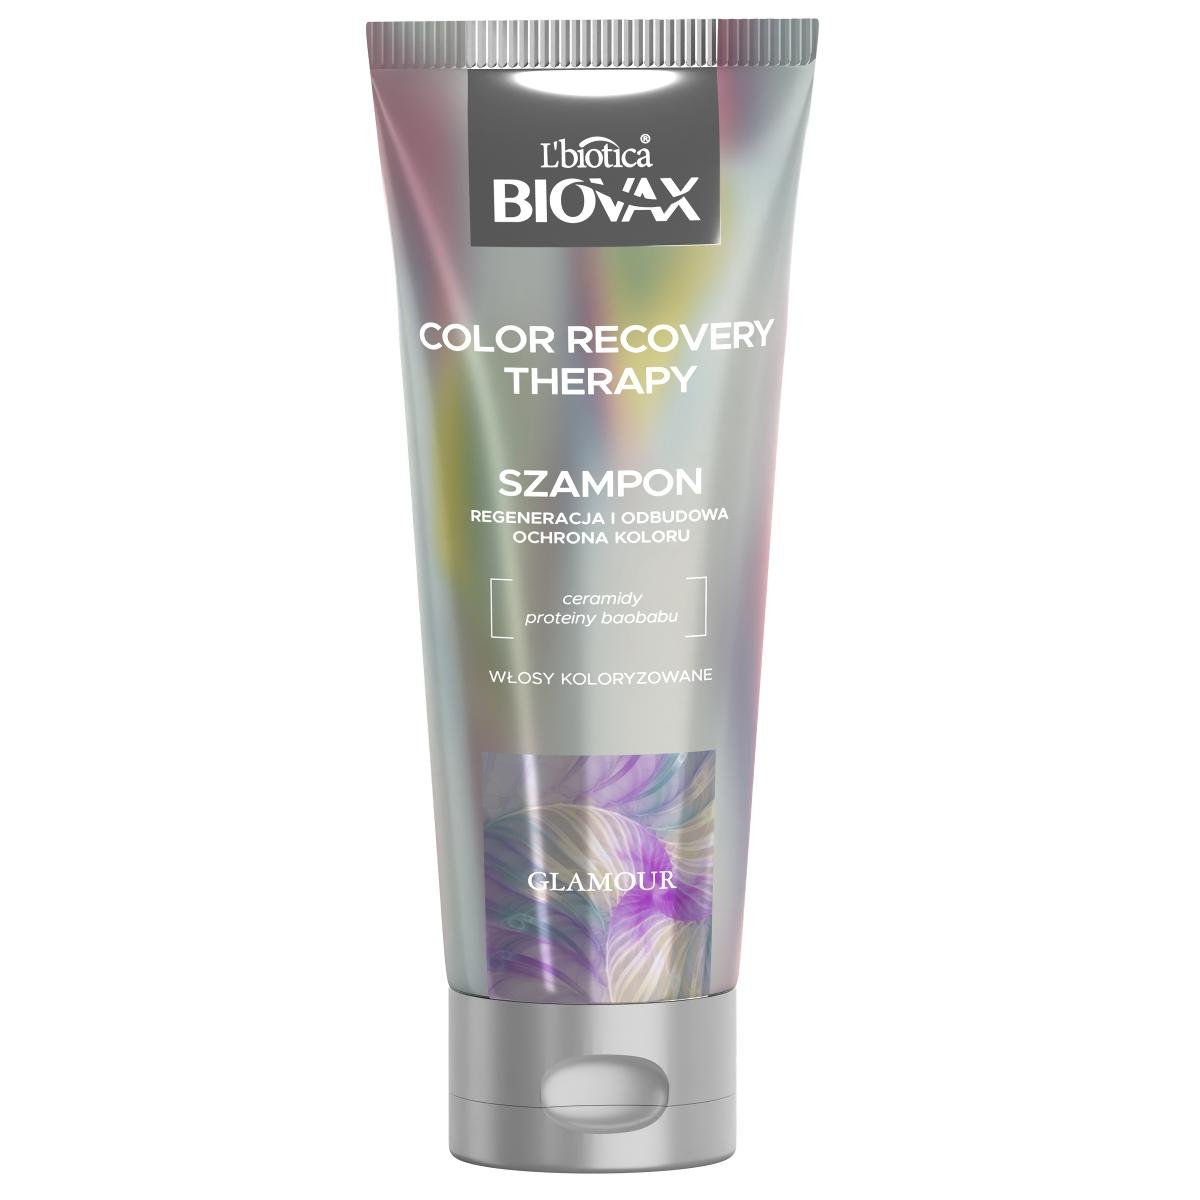 lbiotica biovax szampon do włosów intensywnie regenerujący